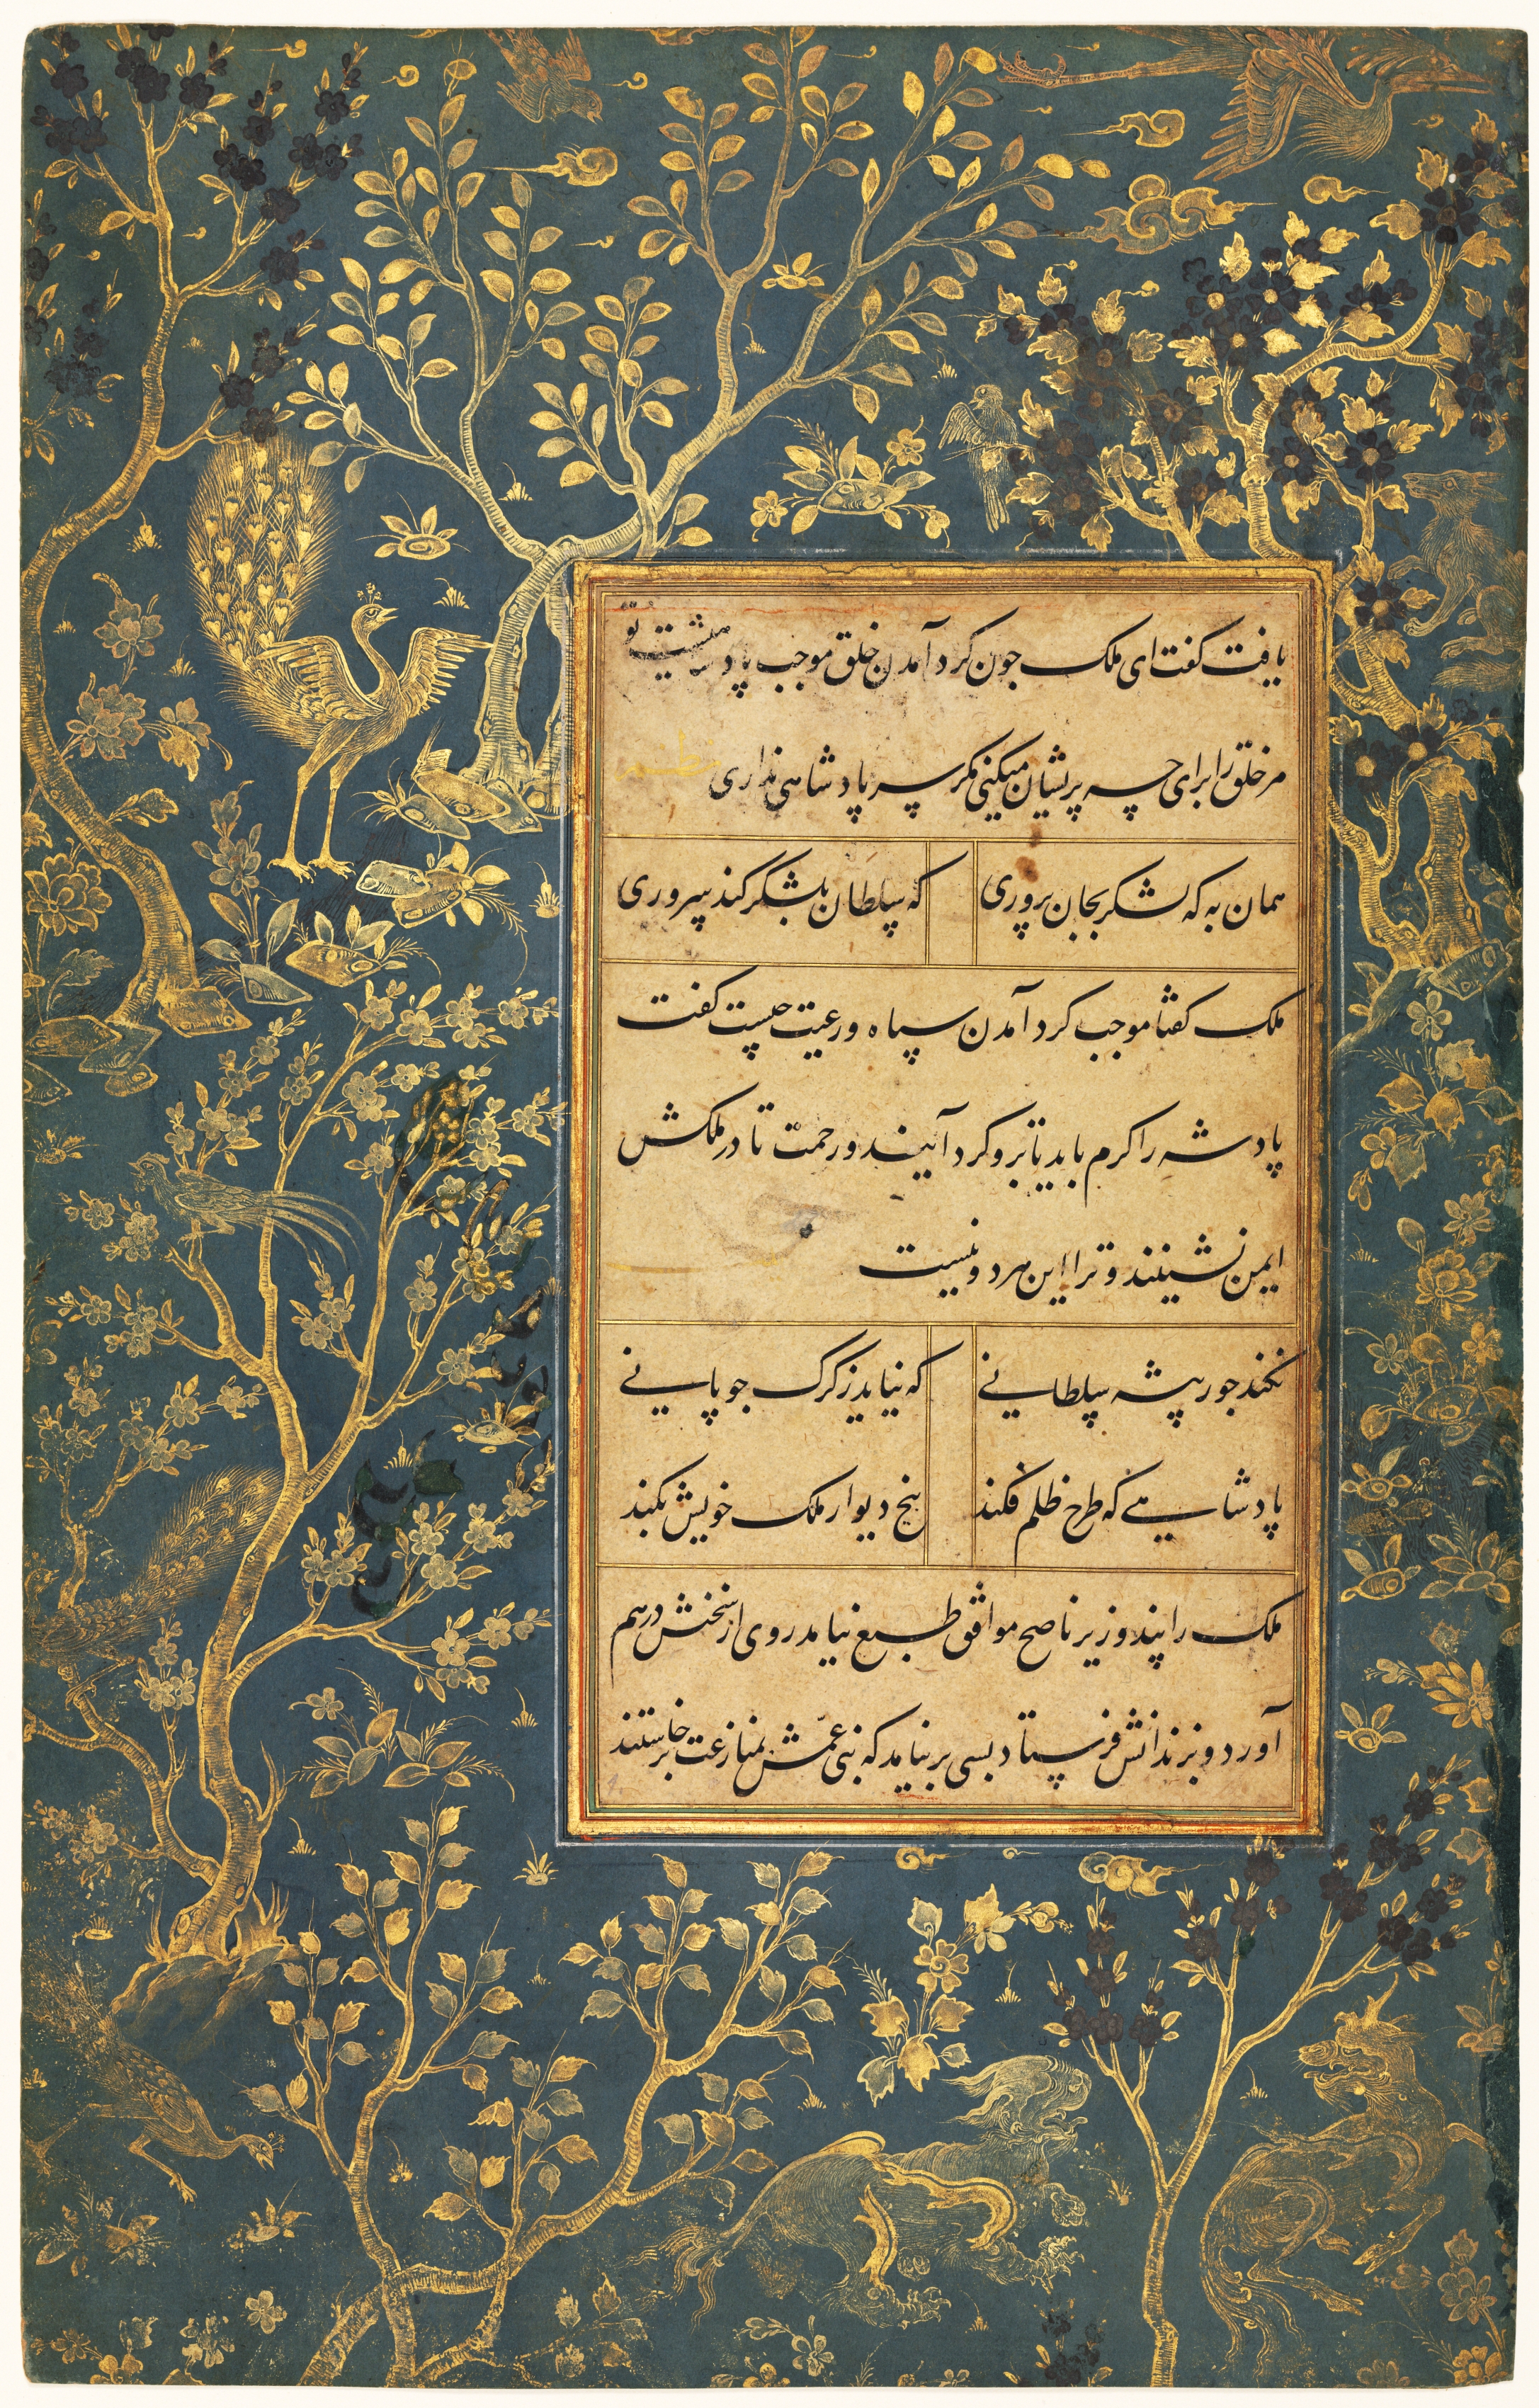 Illuminated Folio (recto) from a Gulistan (Rose Garden) of Sa'di (c. 1213–1291)